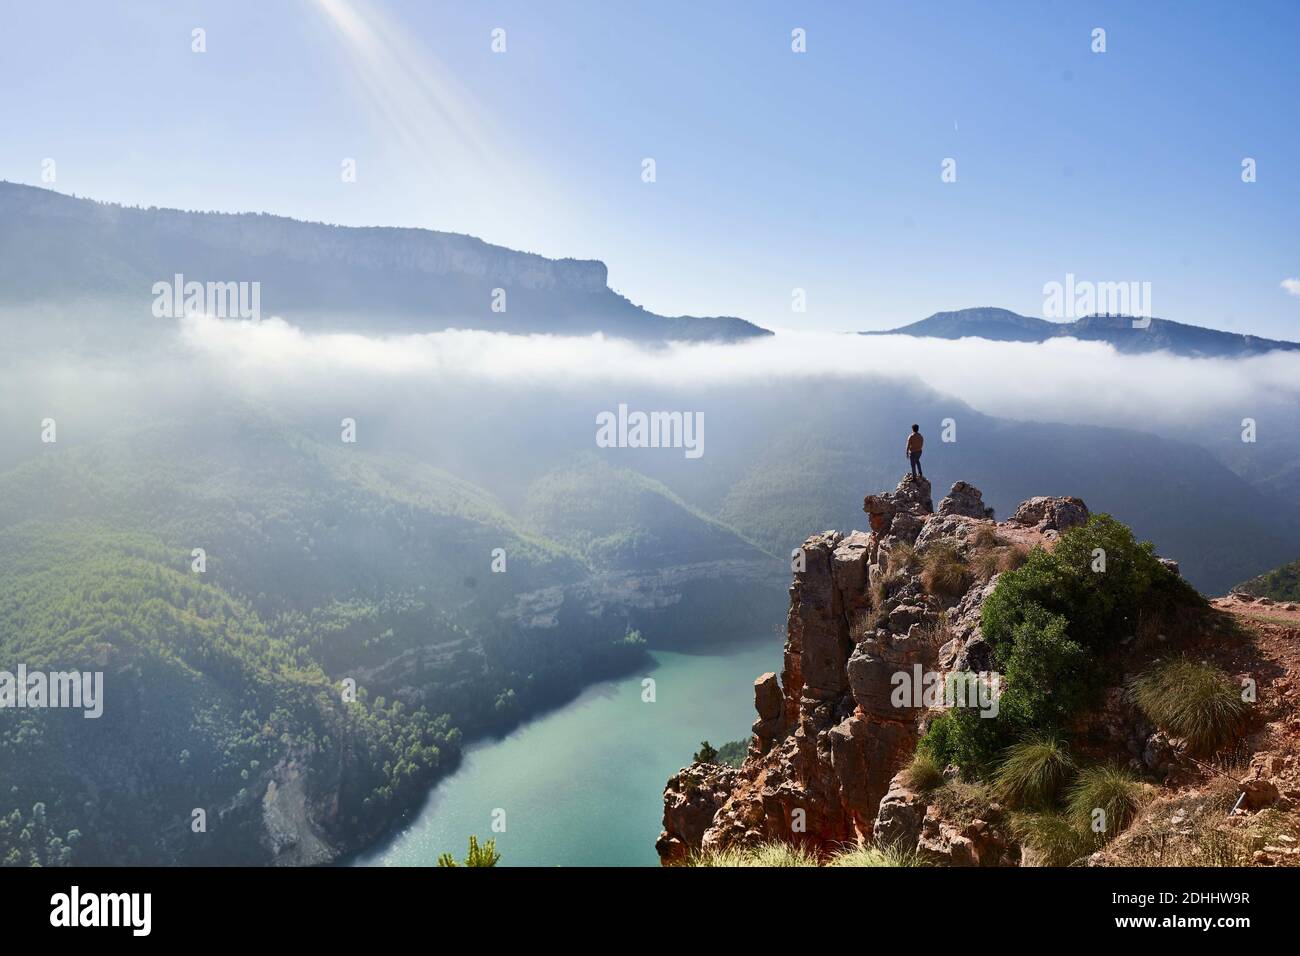 Imagen de un acantilado sobre un rio con niebla al fondo y un hombre observando el paisaje.Tomada en la Comundiad Valenciana Stock Photo